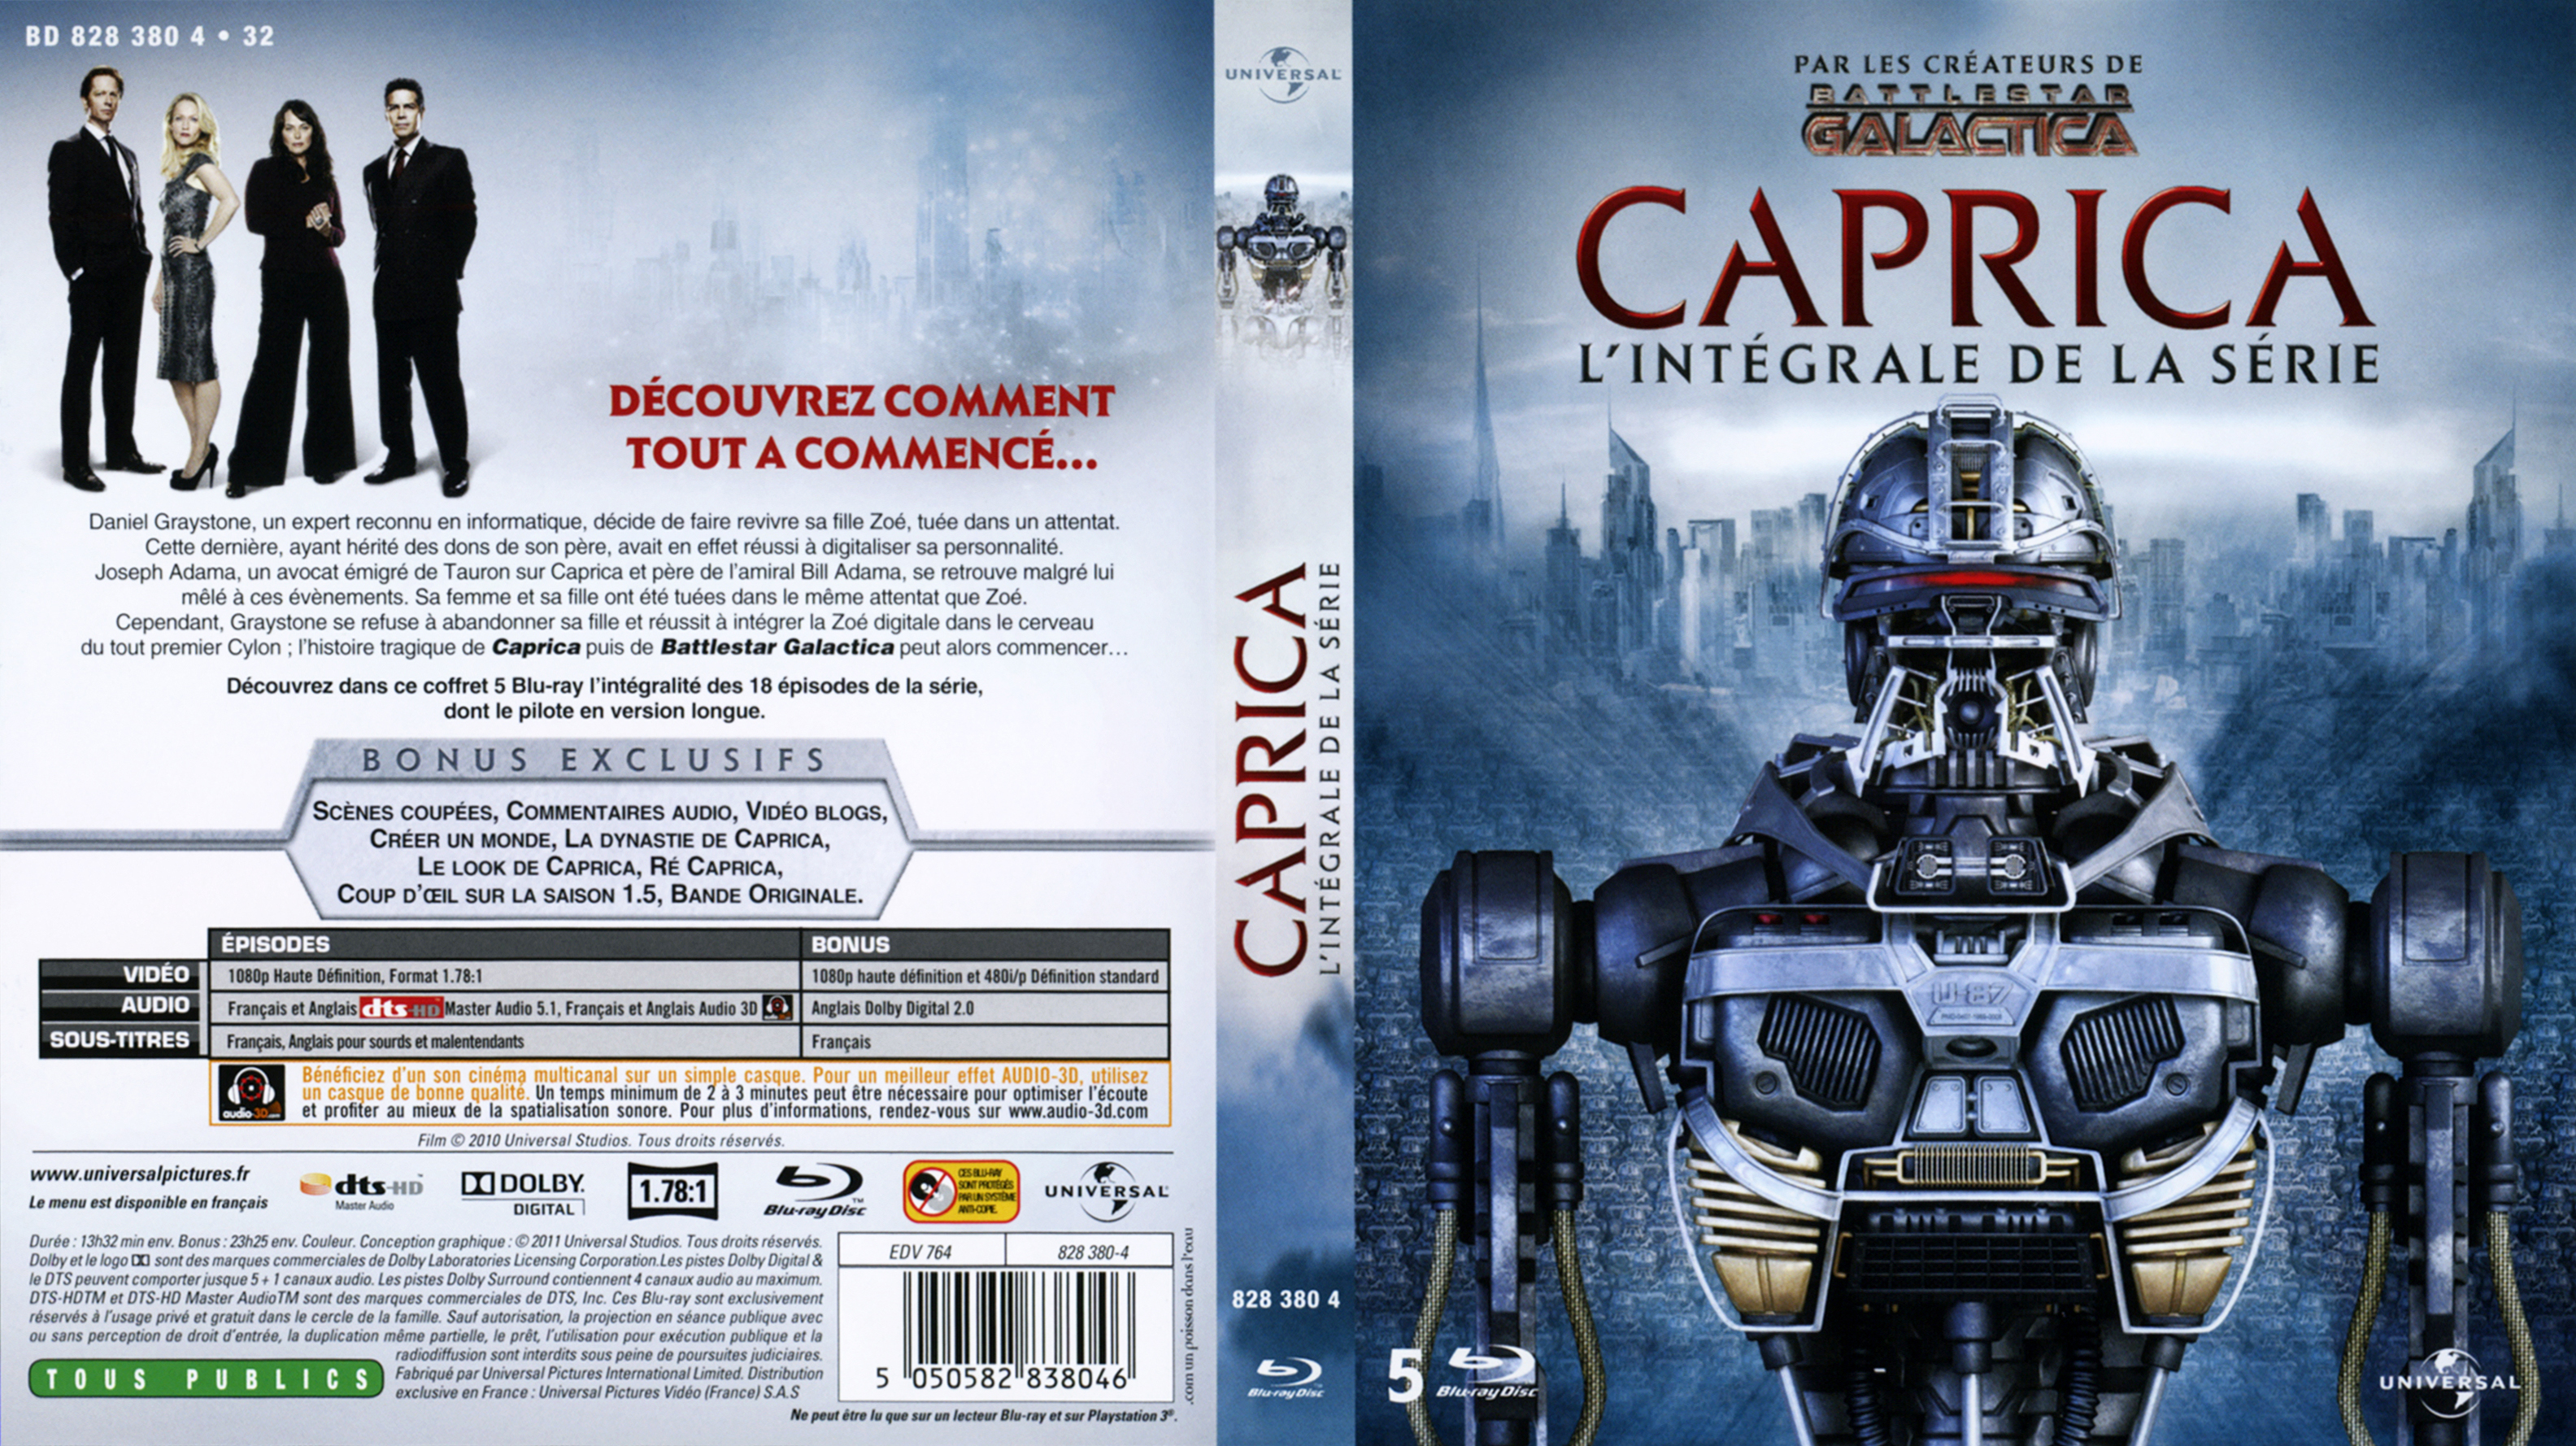 Caprica full movie 720p download